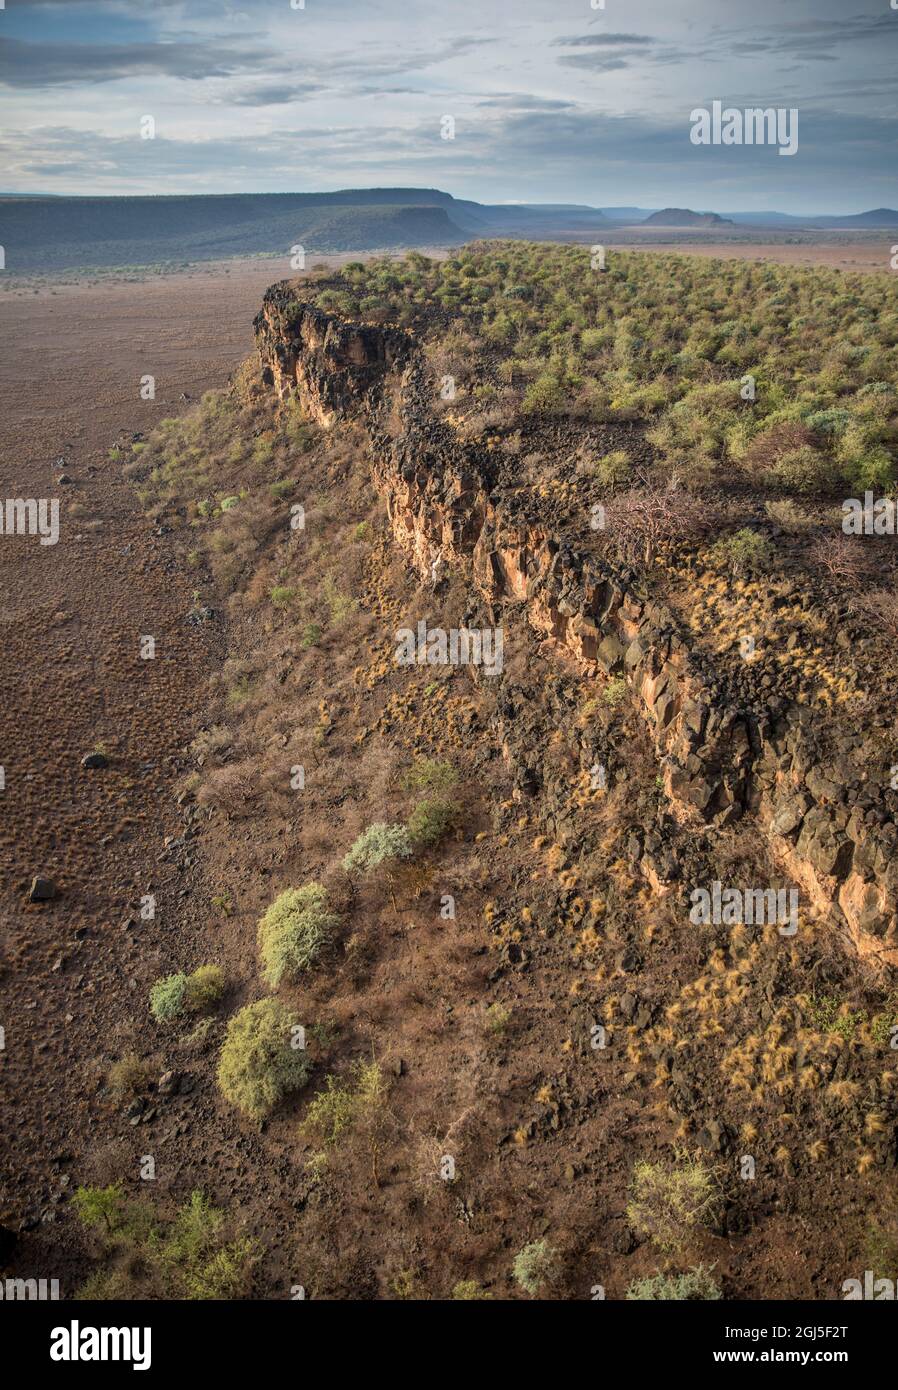 Afrique, Kenya, vue aérienne de l'escarpement du rocher rouge dans la vallée du Rift au sud de Nairobi près de Olorgesailie Banque D'Images